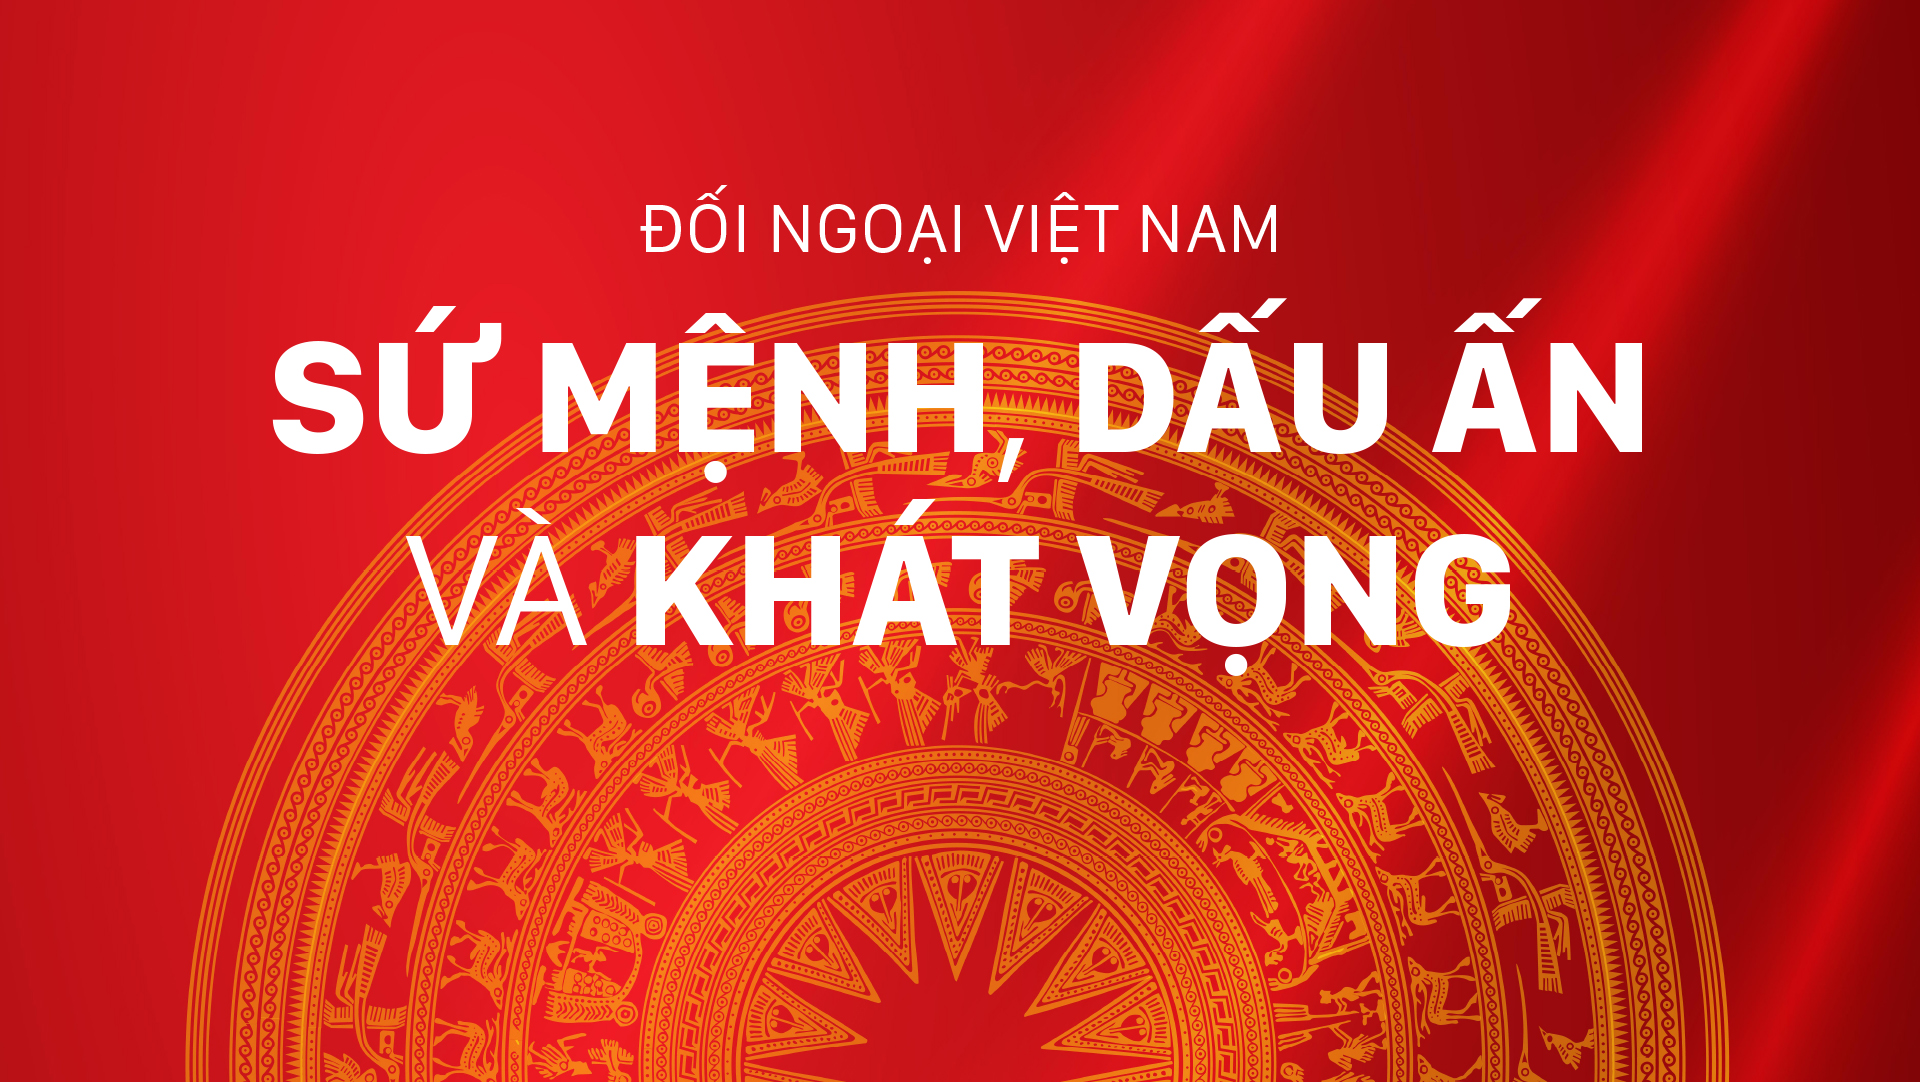 Đối ngoại Việt Nam - Sứ mệnh, dấu ấn và khát vọng